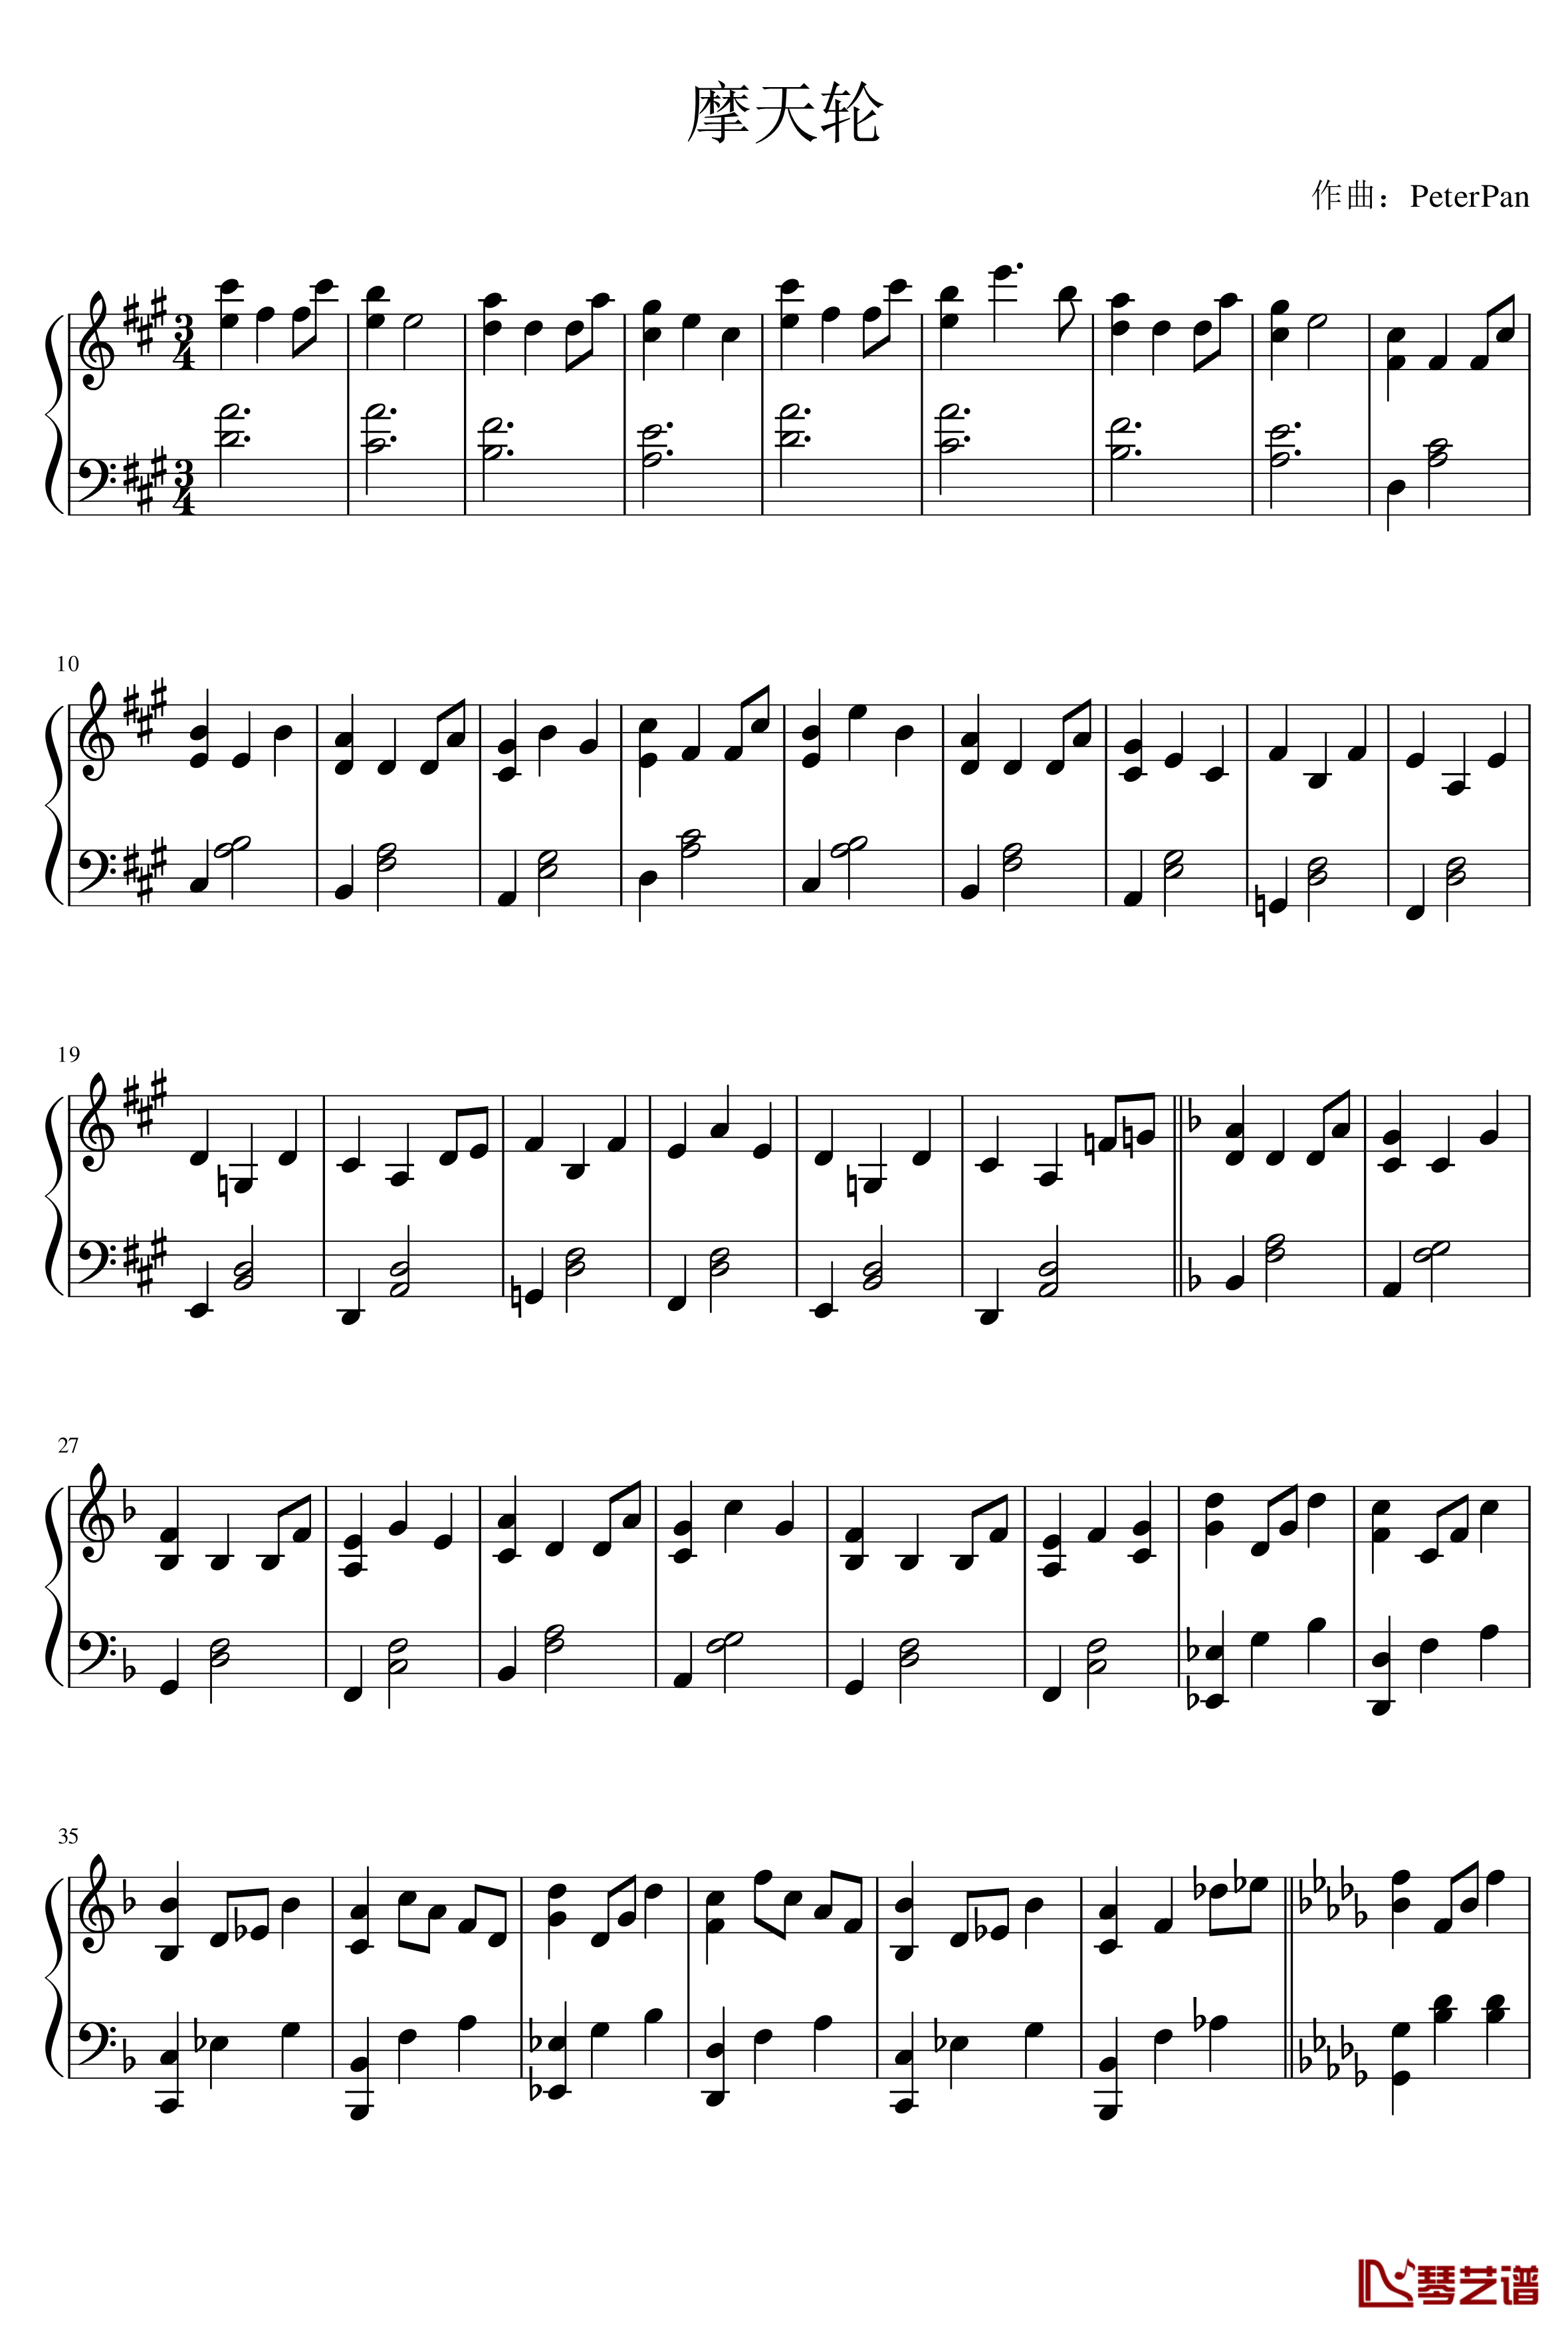 摩天轮钢琴谱-PeterPan_n1